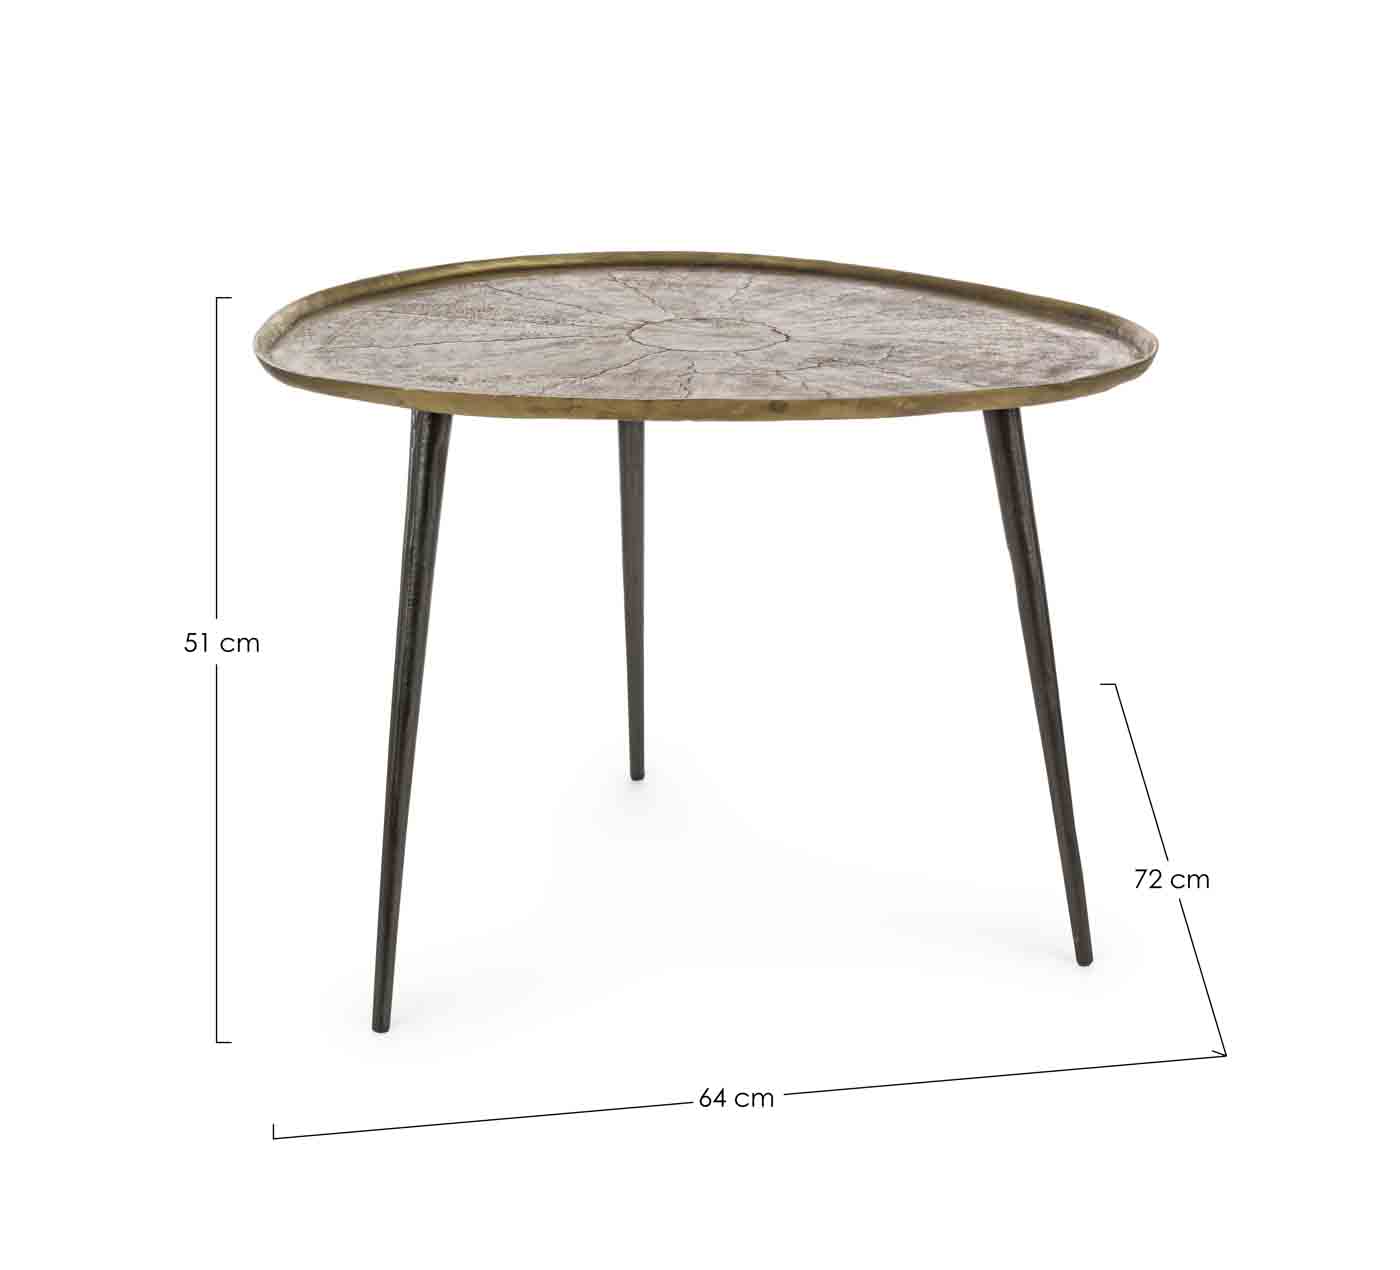 Der Beistelltisch Karima wurde aus Aluminium hergestellt. Dabei hat die Tischplatte ein Feinbearbeitung erhalten. Das Design ist Skandinavisch.